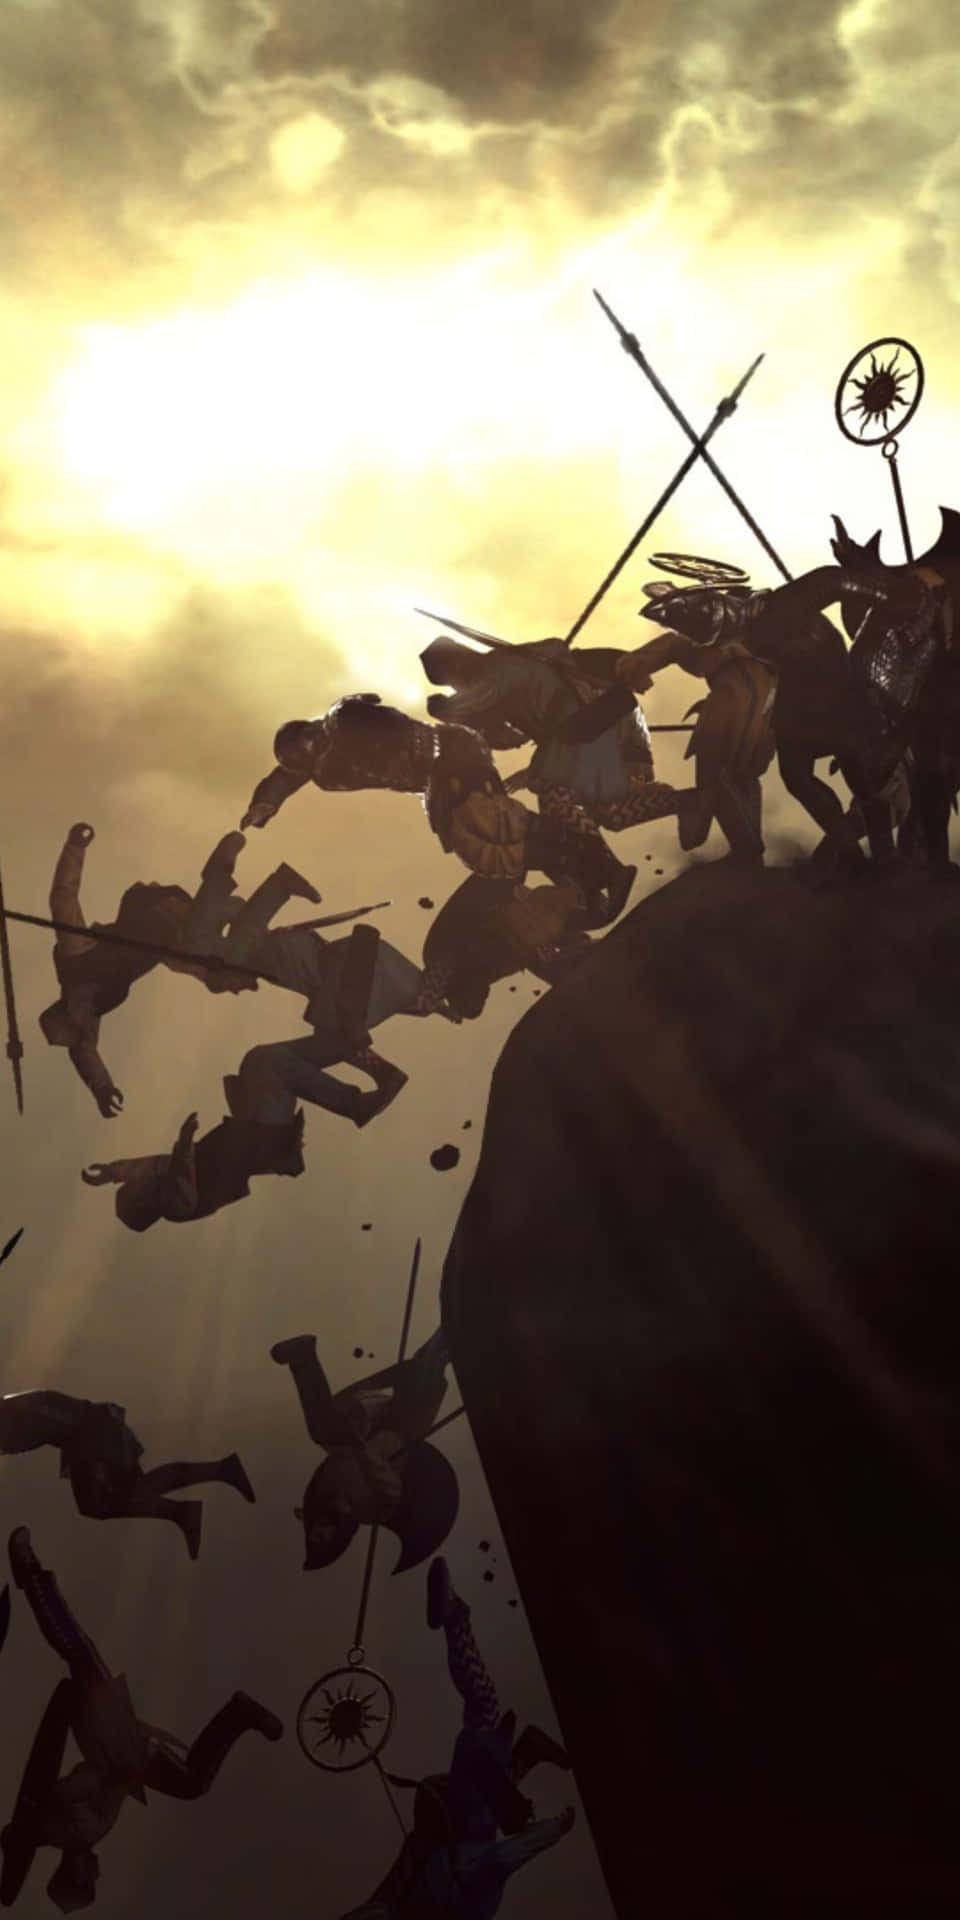 Pixel3 Bakgrundsbild Med Total War Rome 2 Som Visar Krigare Som Blir Knuffade Av En Klippa.